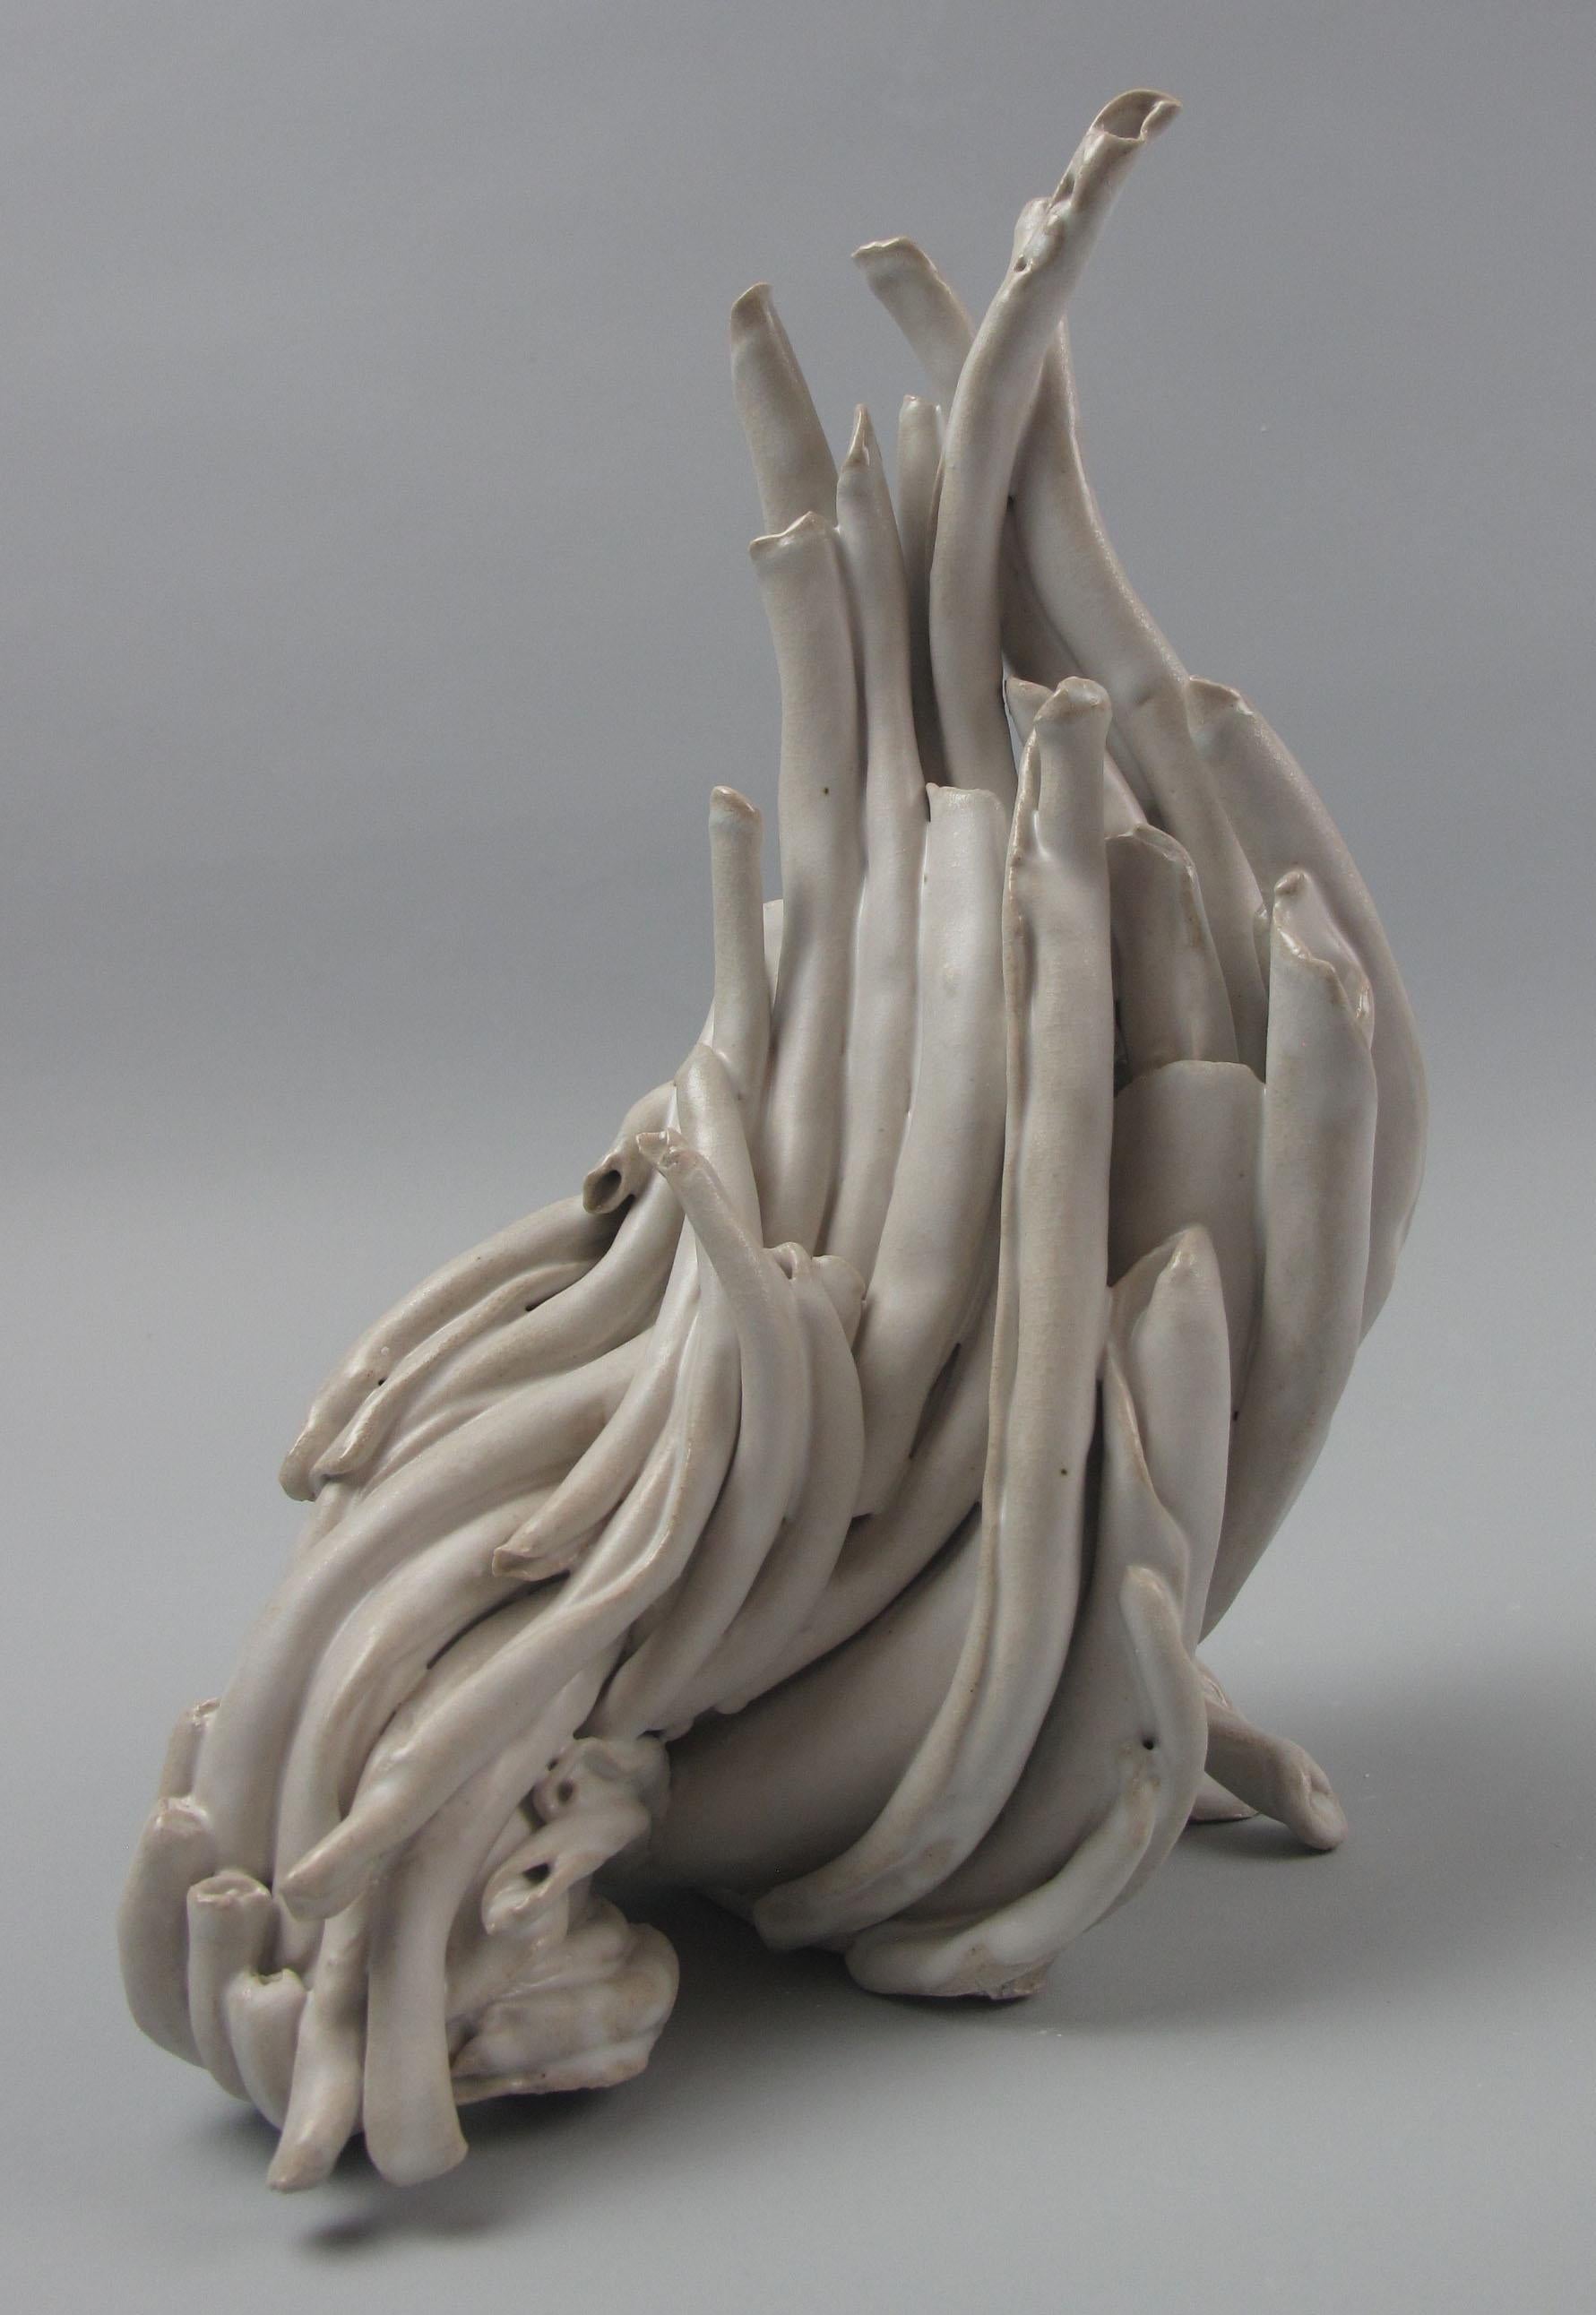 Sara Fine-Wilson Abstract Sculpture - "Turn", abstract, gestural, ceramic, sculpture, cream, white, stoneware